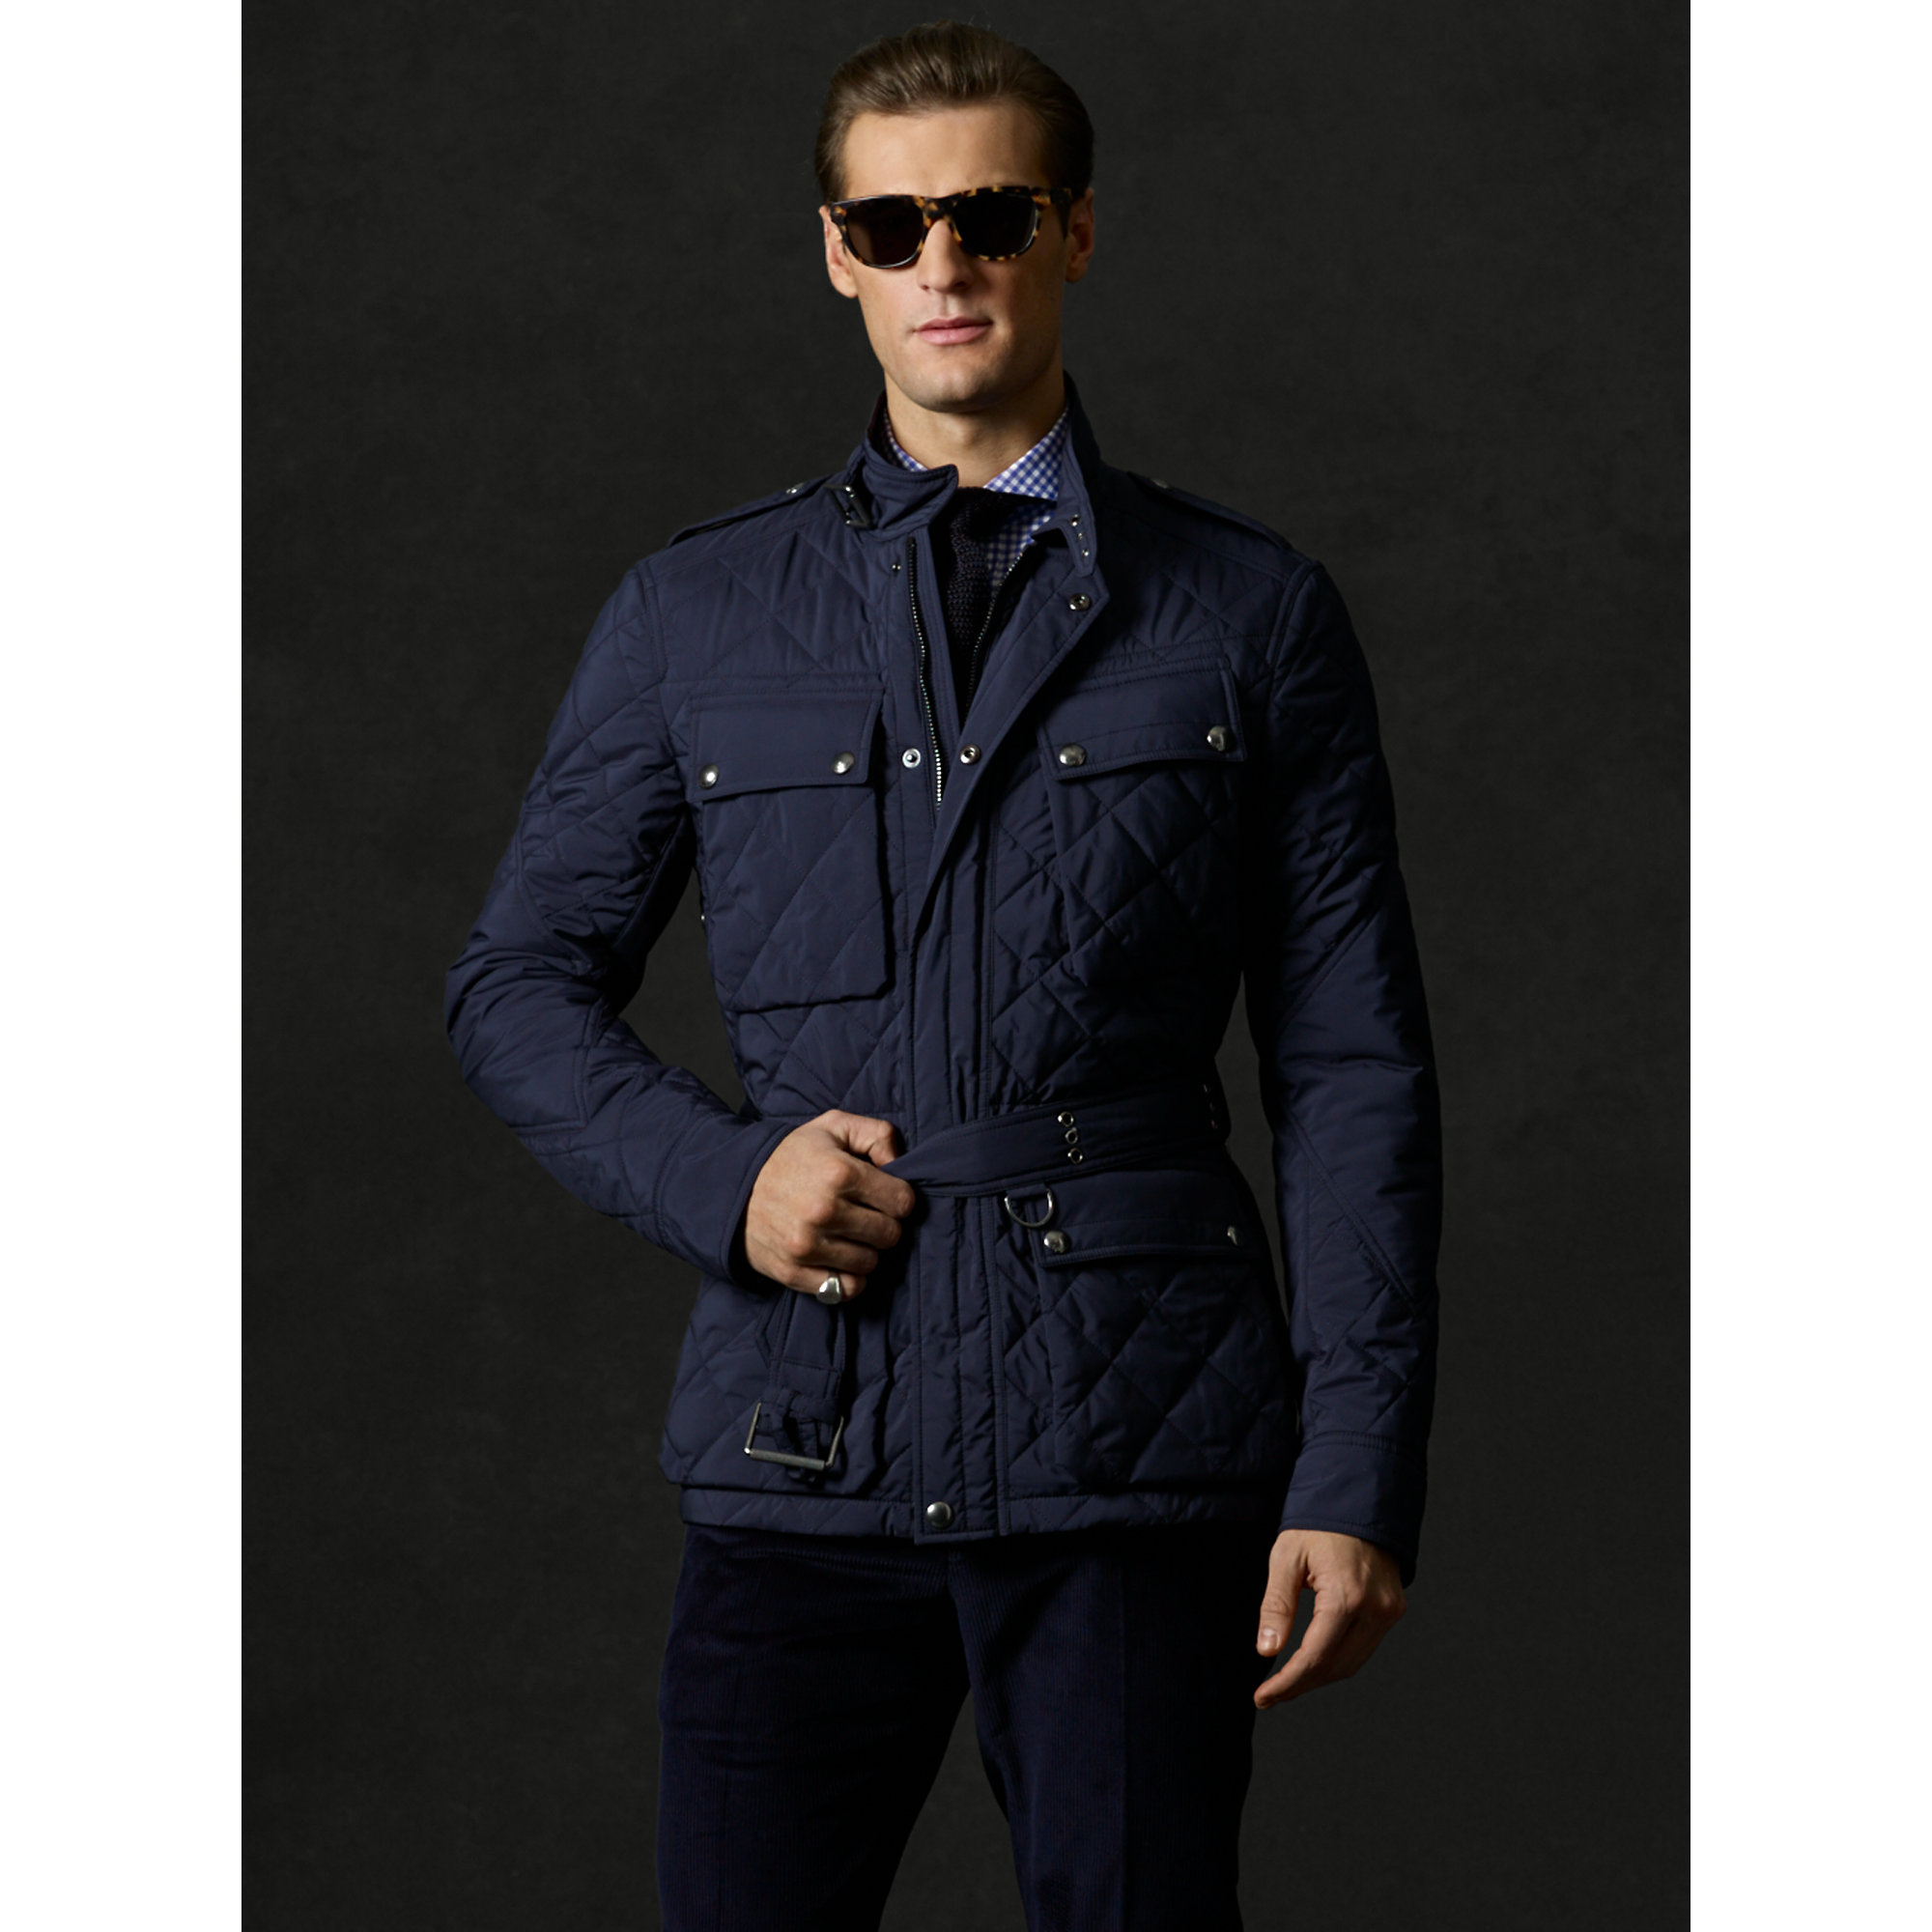 Ralph Lauren Purple Label Kensington 4-Pocket Jacket in Navy (Blue 